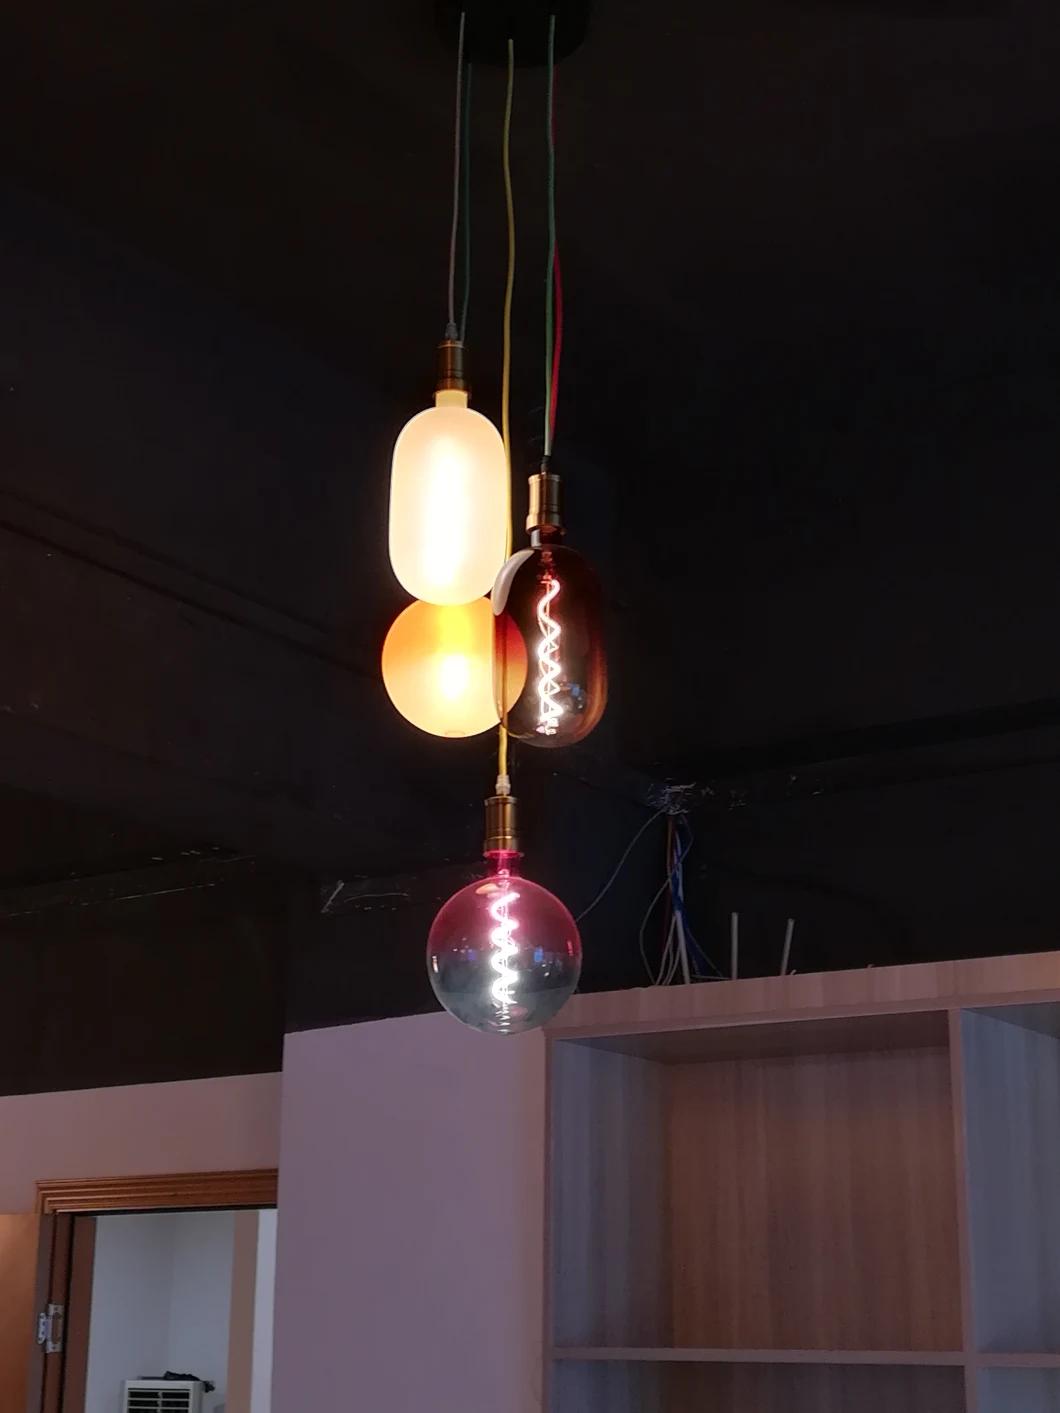 Drop-Shaped Gradient Glass Colour Fashion Decorative LED Light Bulb